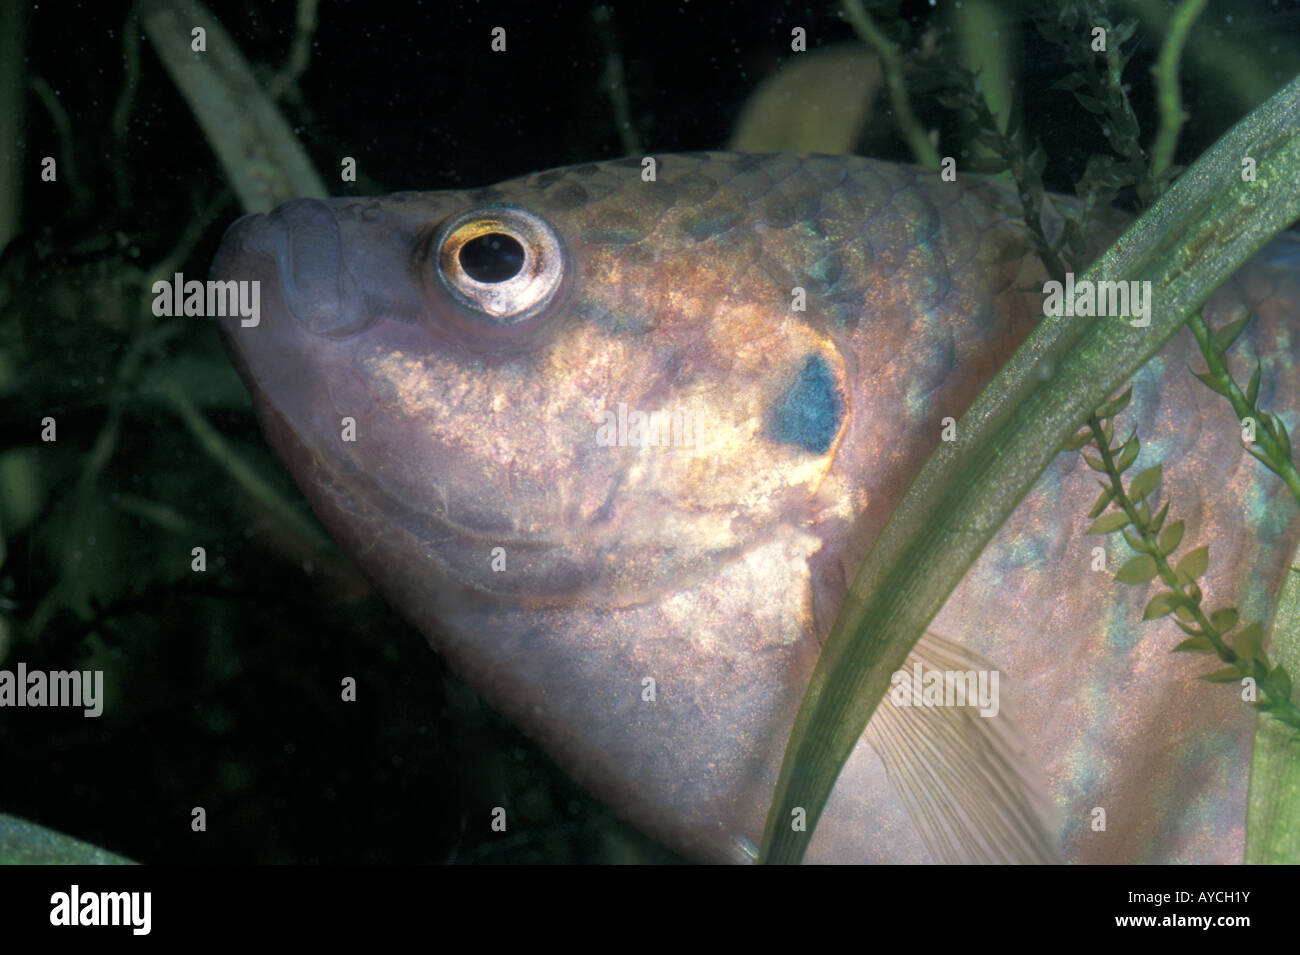 Macropodus opercularis, Paradise Fish, Belontidae Stock Photo